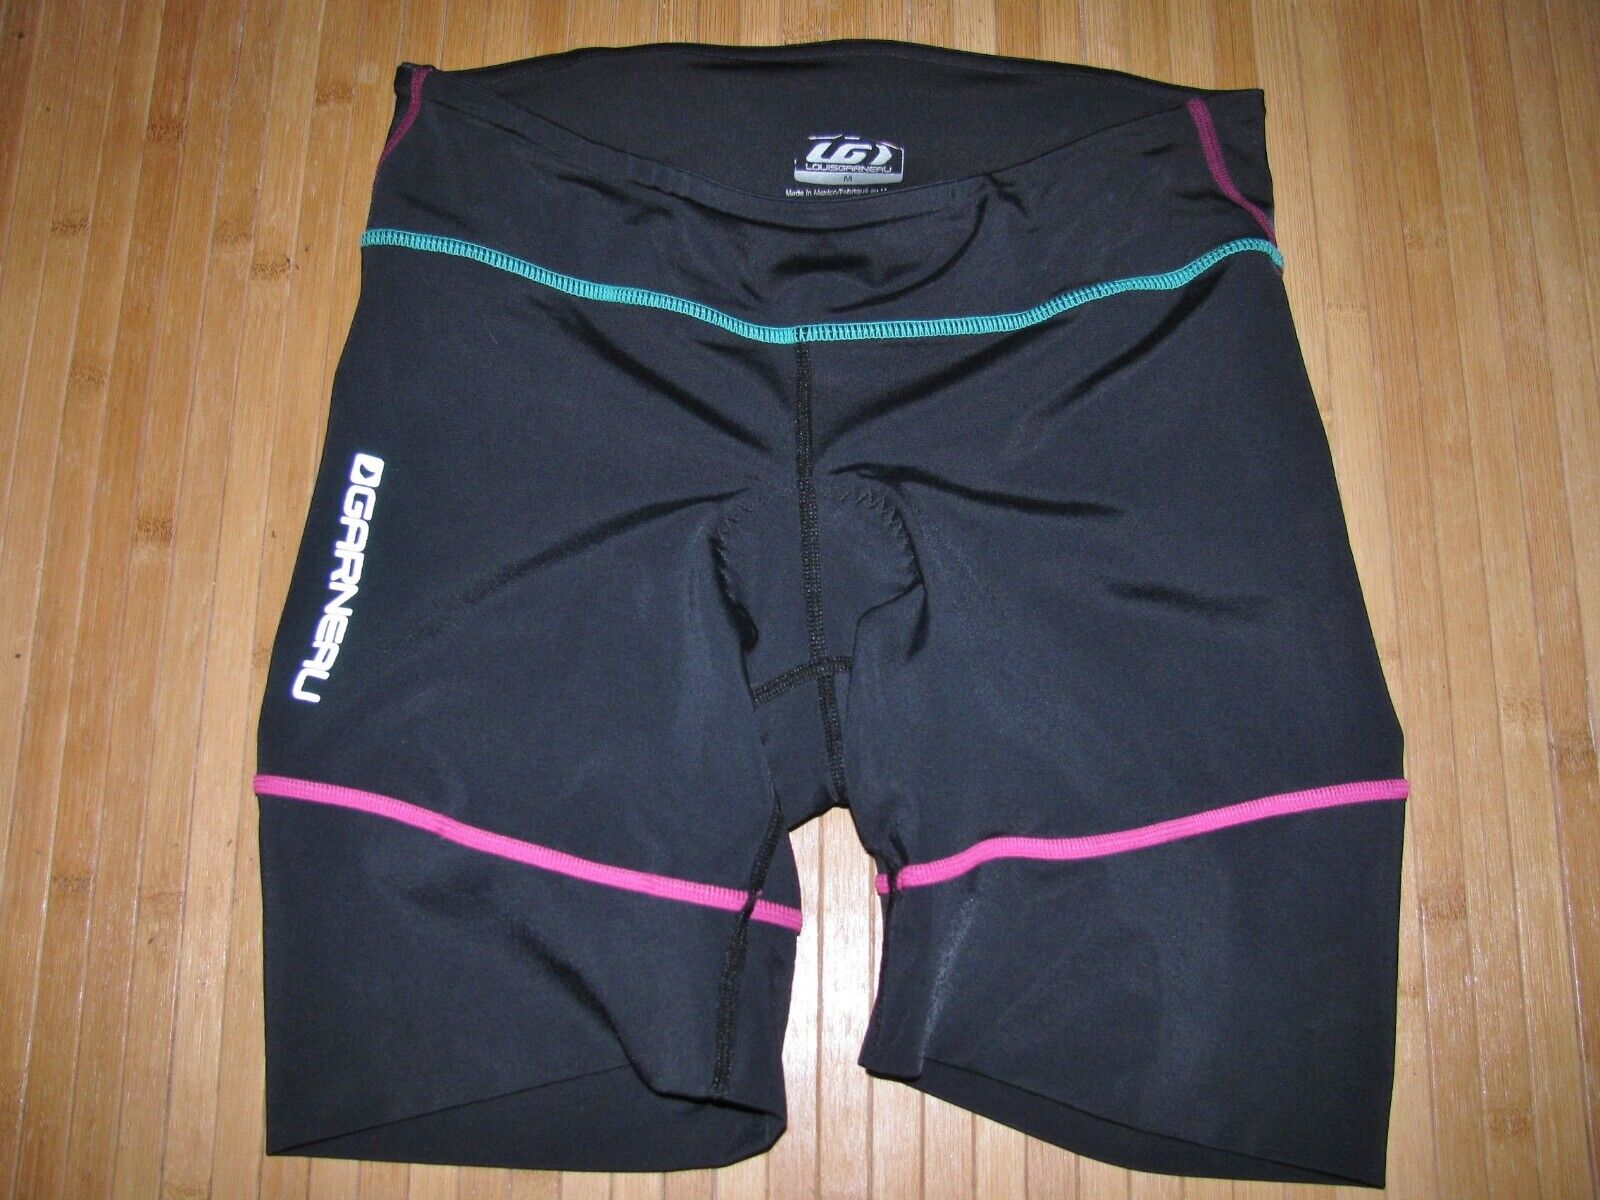 Garneu Shorts Tri Triathlon Womens Medium Poly Spandex Black With Green And Pink